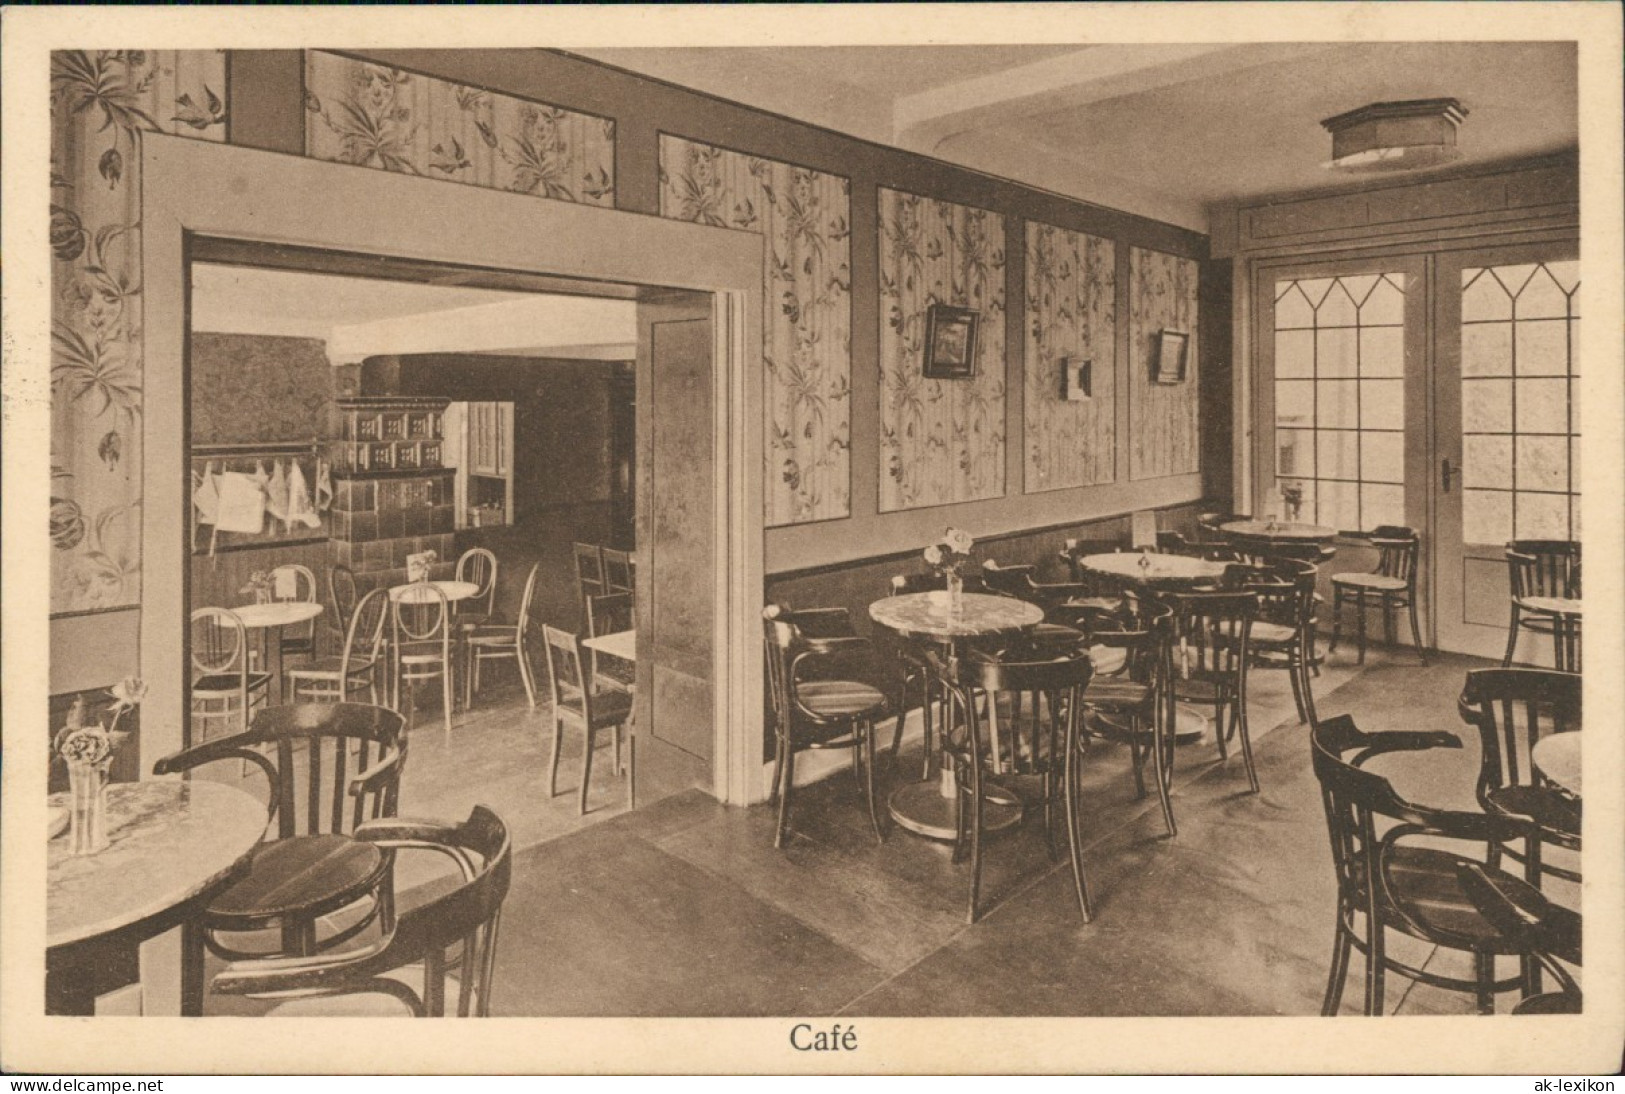 Ansichtskarte Bad Soden (Taunus) Café Und Conditorei Gg. Jung - Gastraum 1929 - Bad Soden